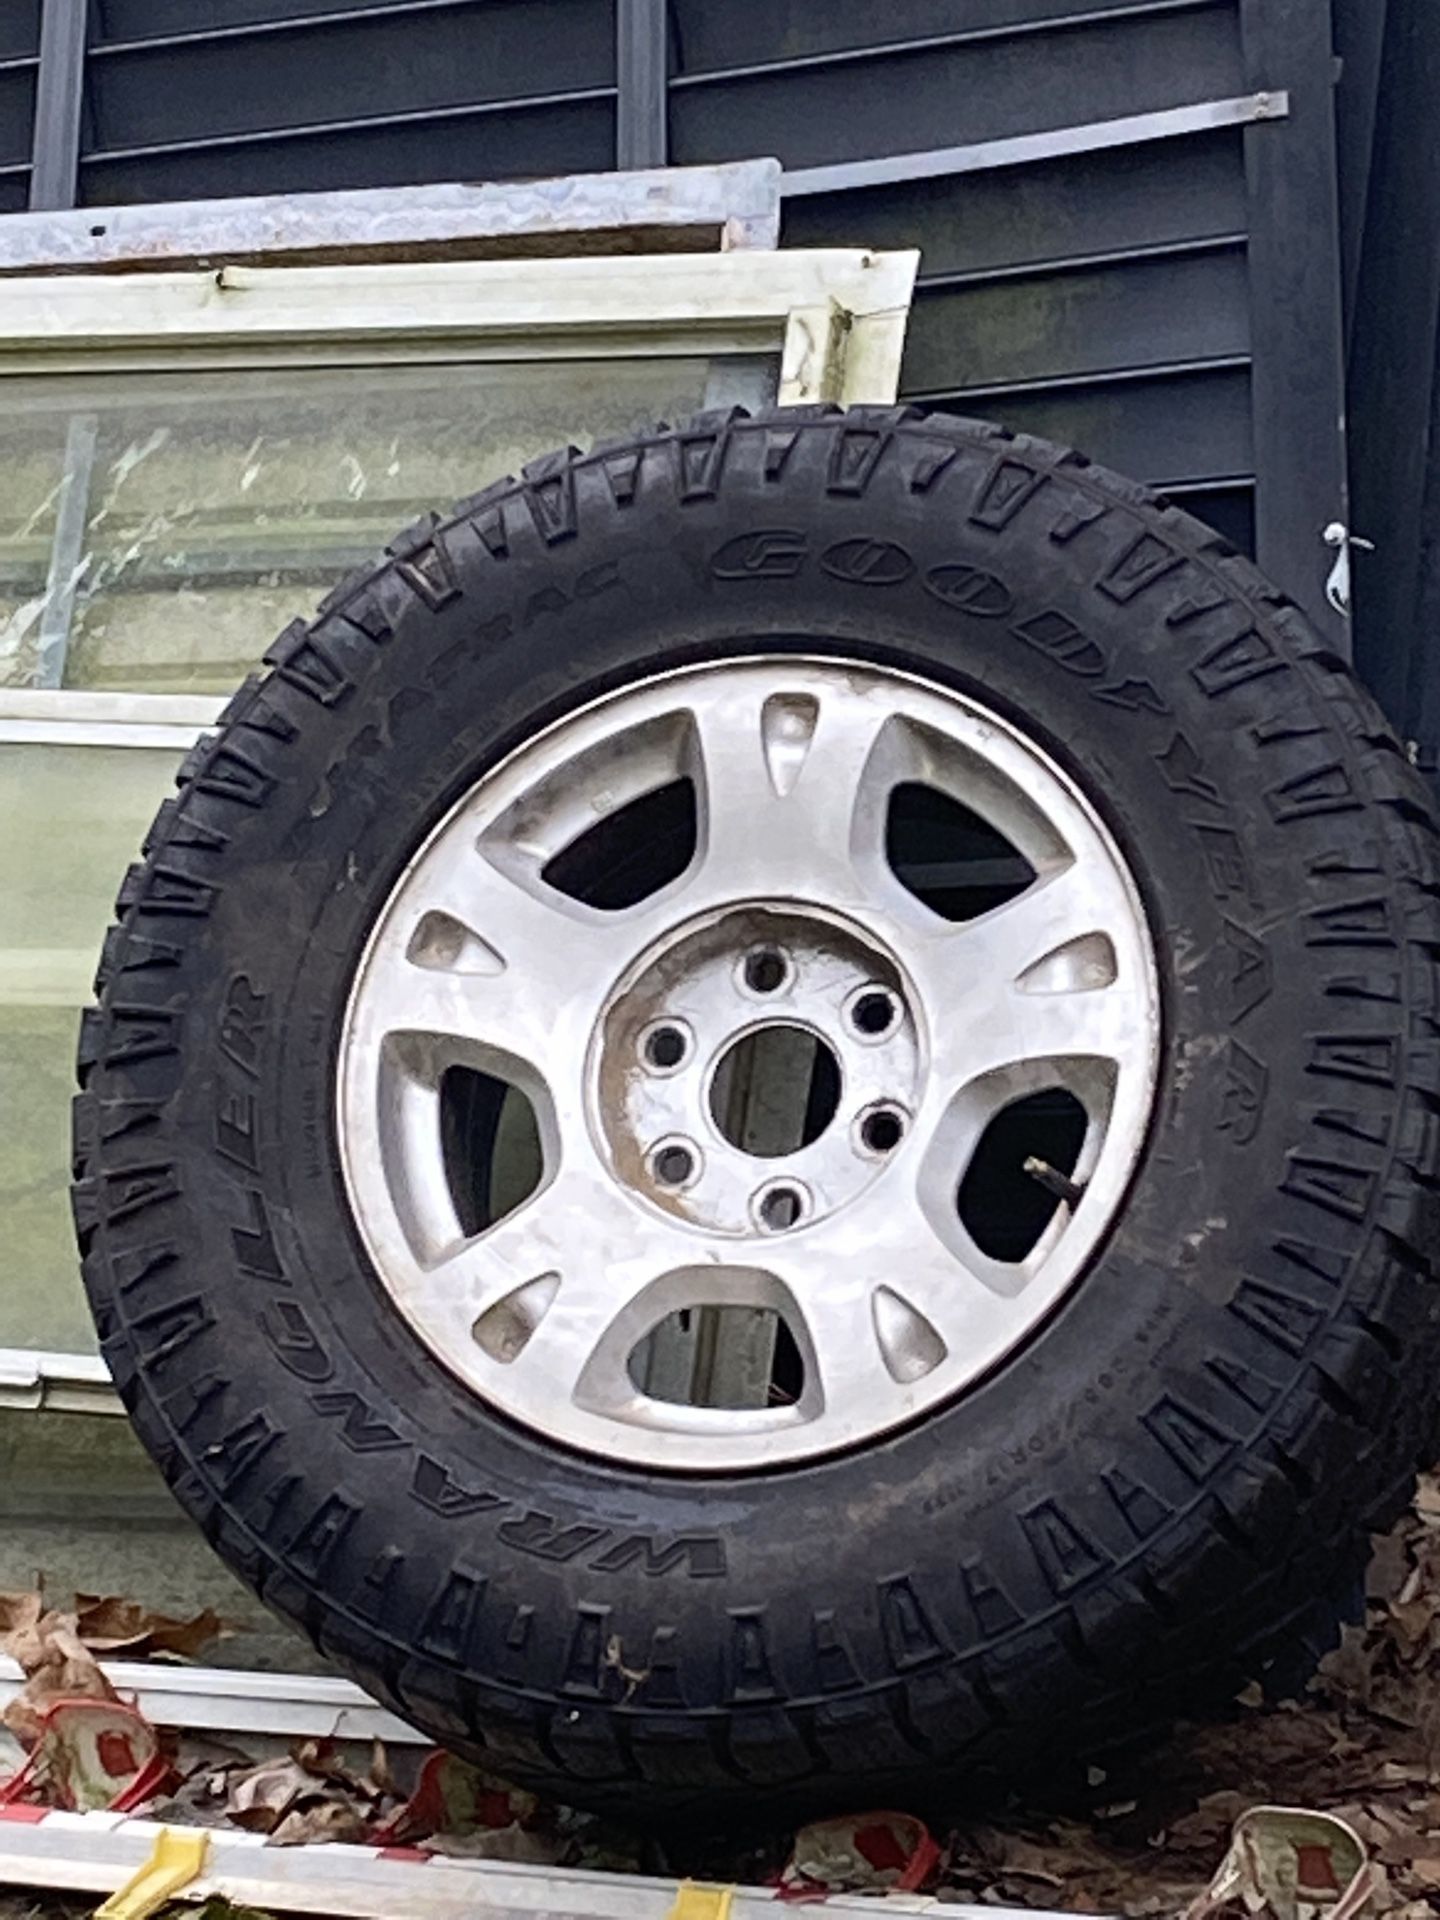 2007 Chevy Silverado 17” Wheel 